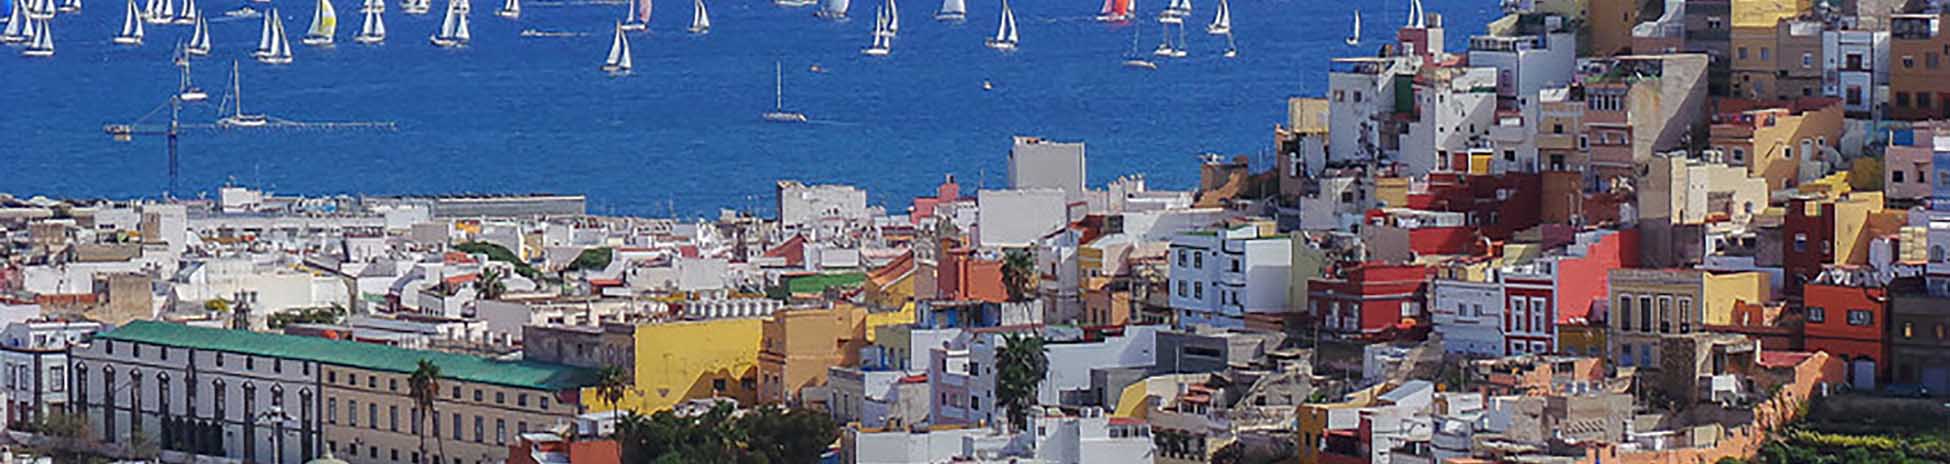 Immagine del porto di arrivo Gran Canaria (Las Palmas G.C.) per la rotta traghetto Tenerife (Santa Cruz) - Gran Canaria (Las Palmas G.C.)